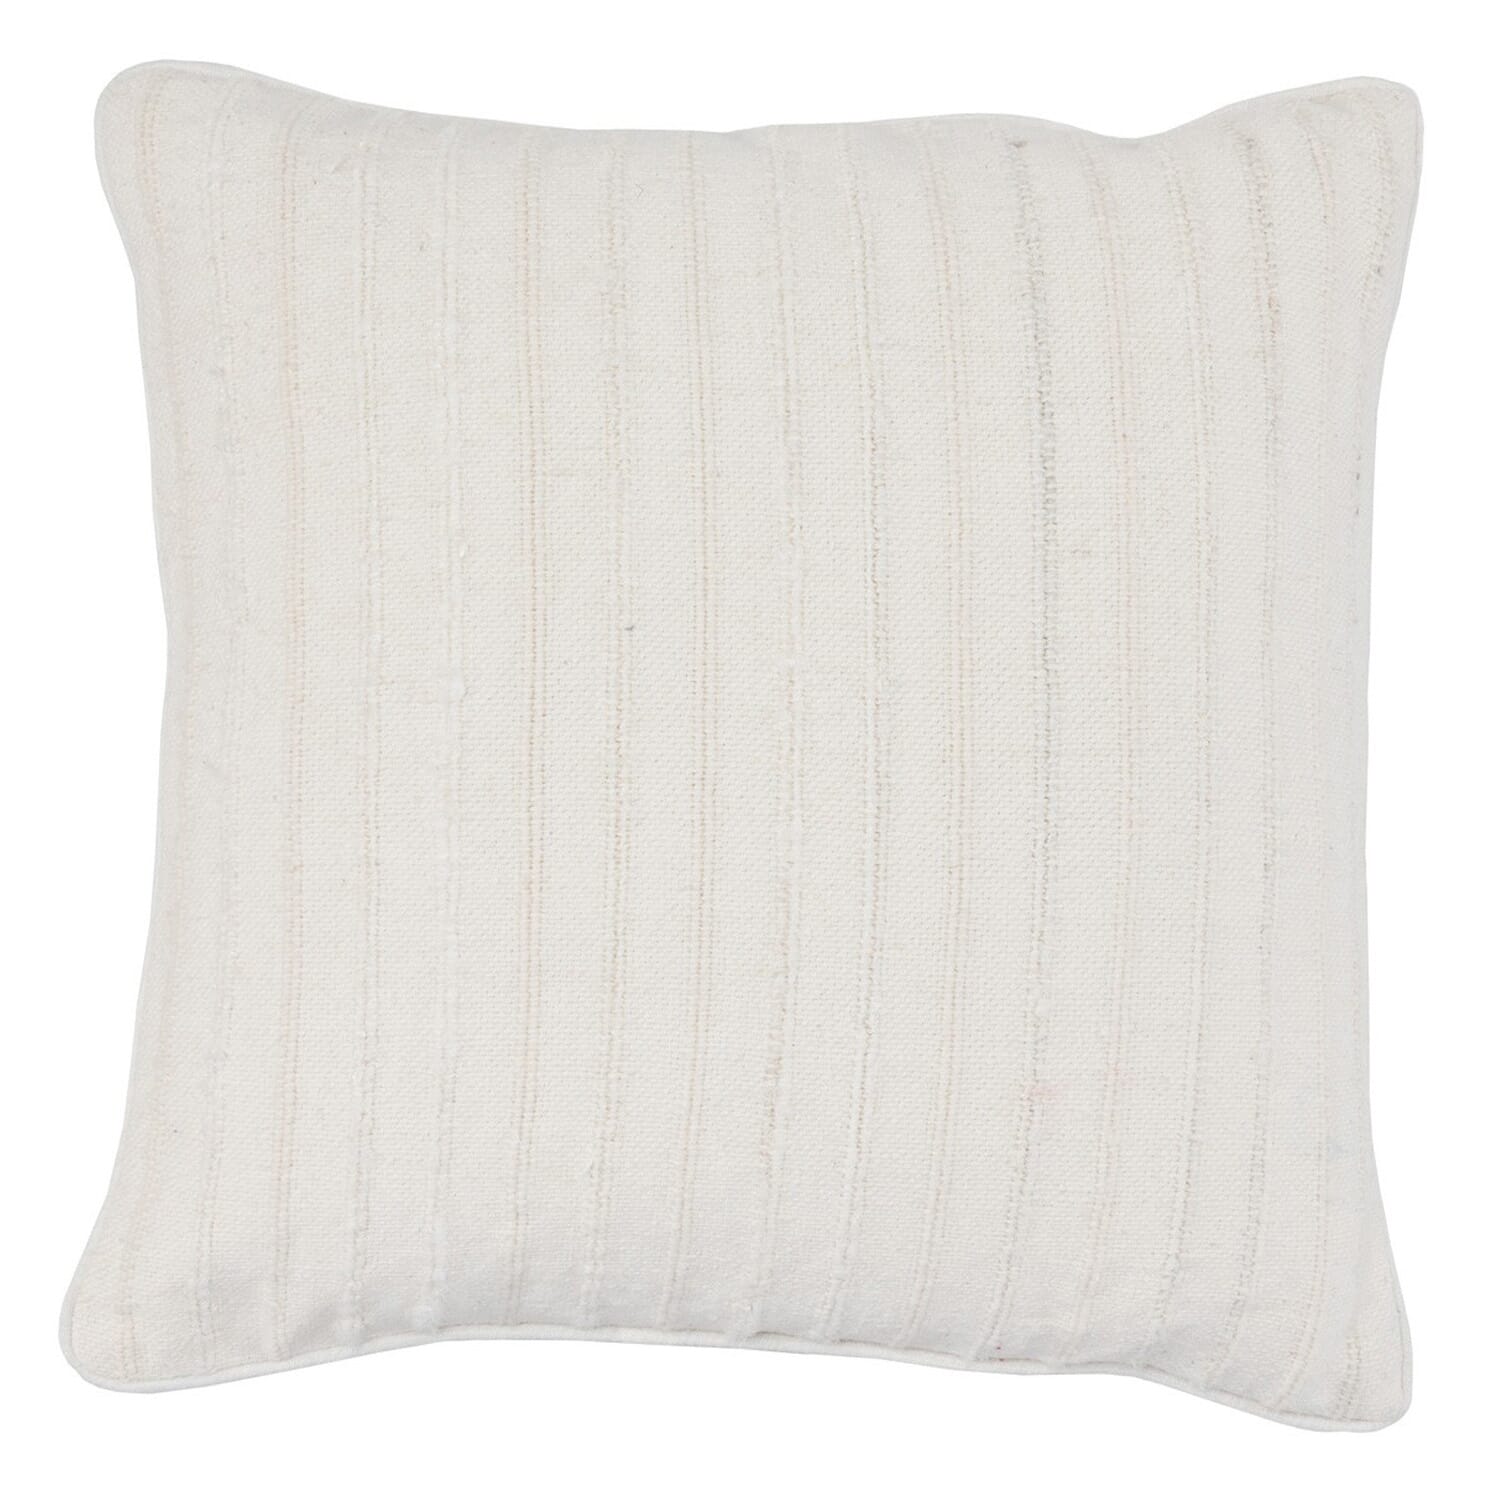 22" Keltie Linen White Pillow